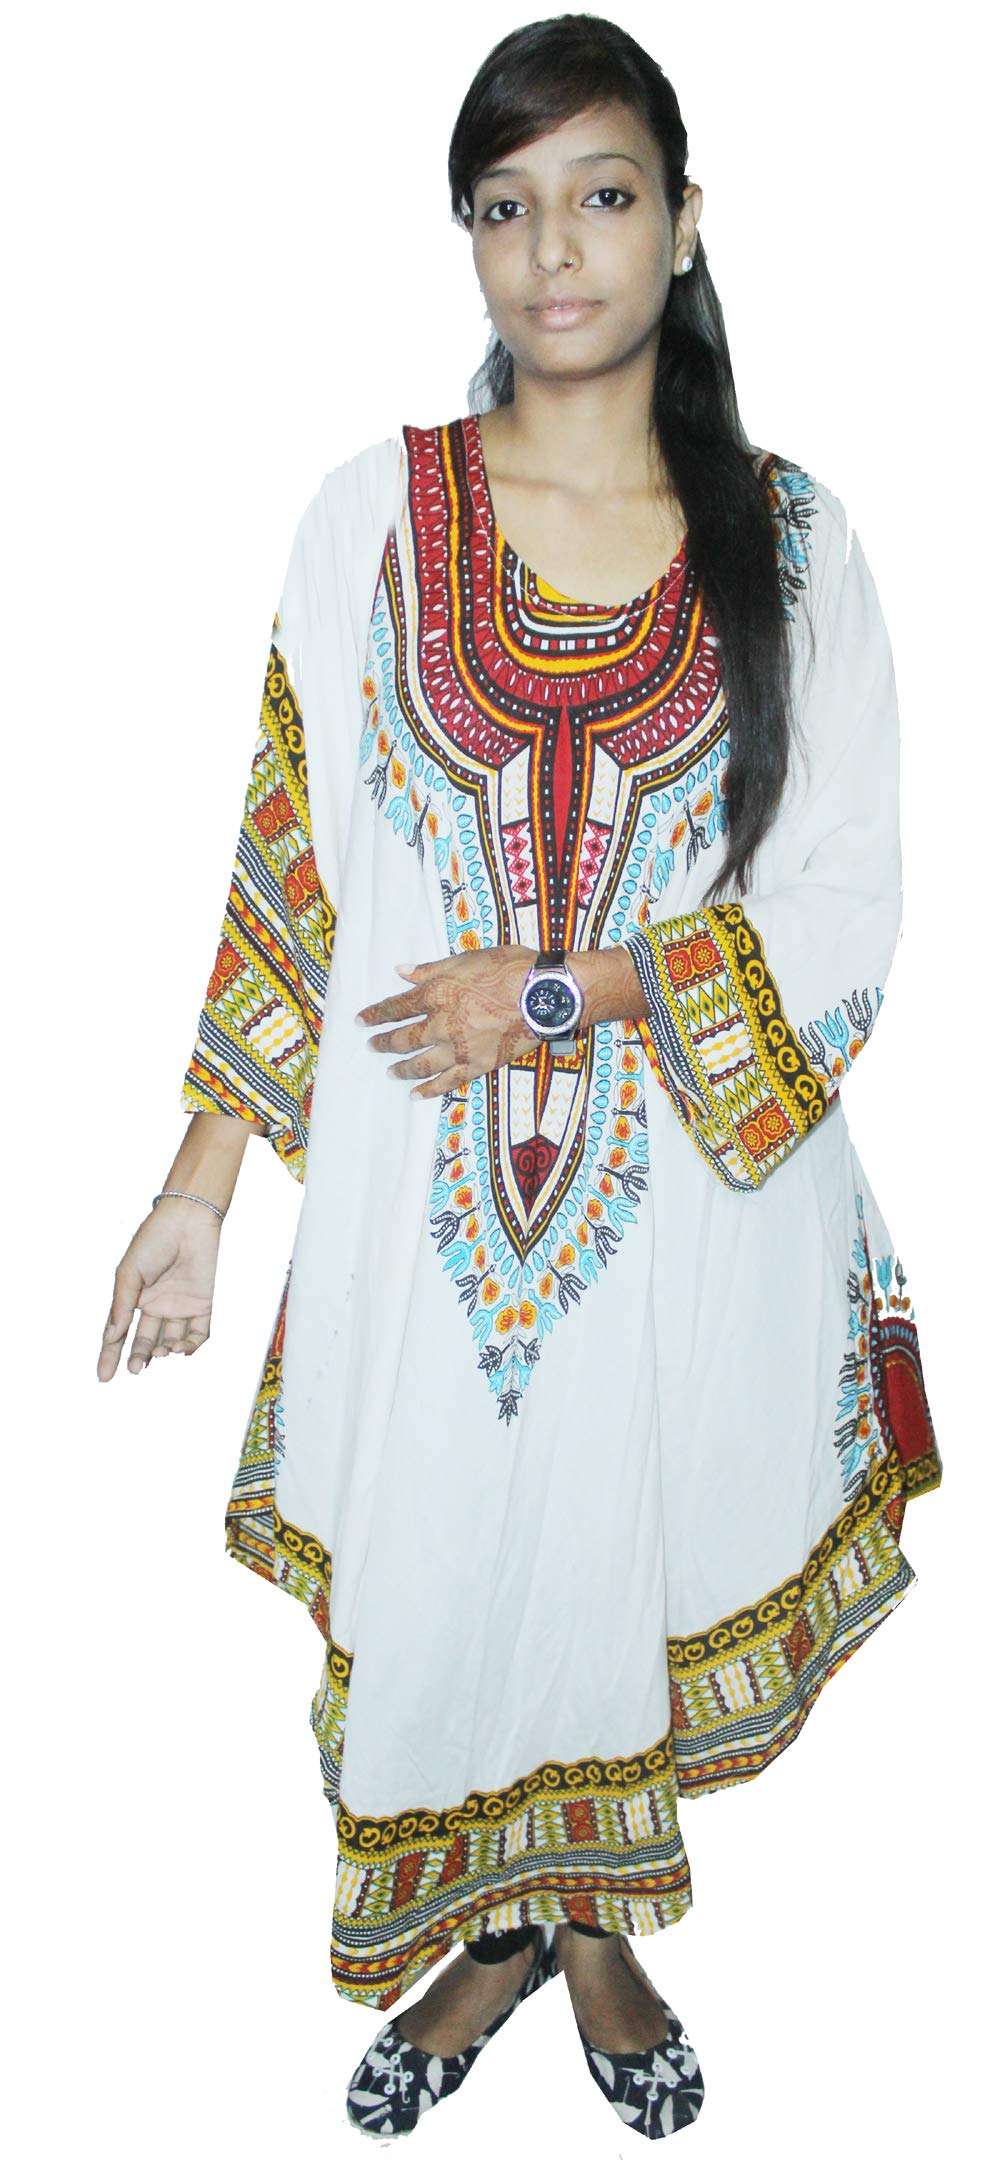 lakkar haveli Indian 100% Cotton Dashiki Print White Color Dress Women Fashion Long Plus Size